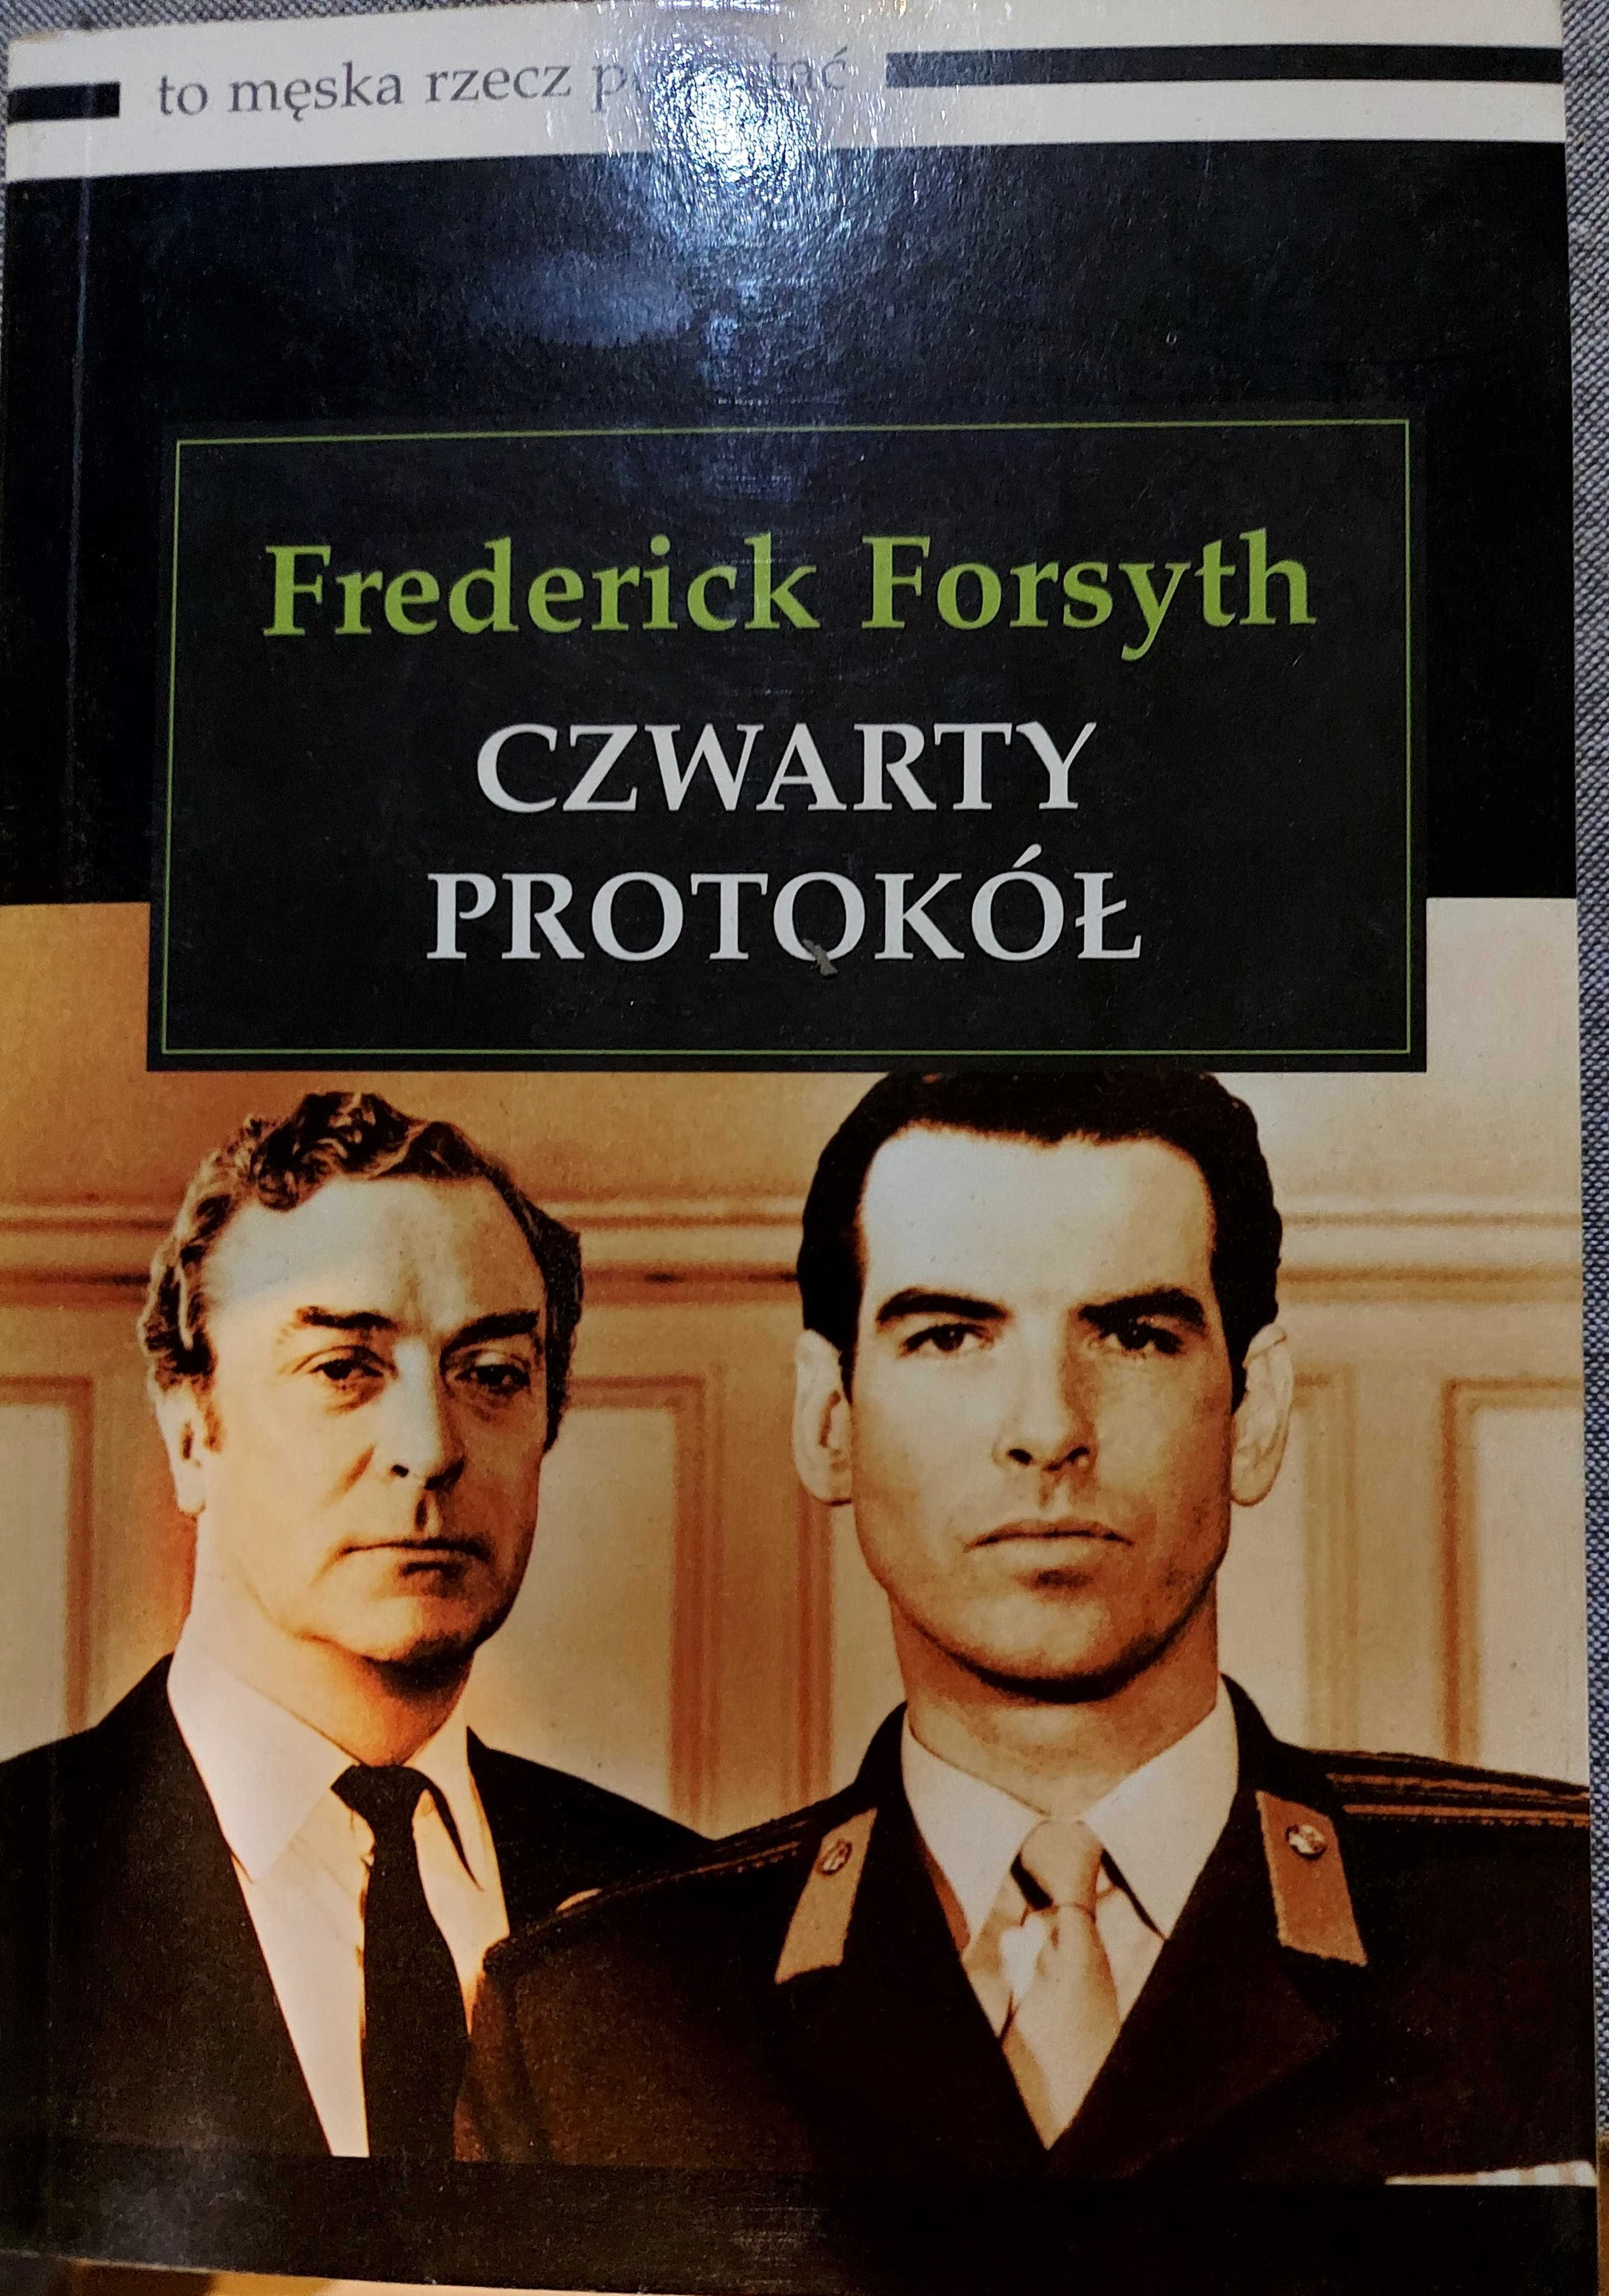 Frederick Forsyth "Czwarty protokół"